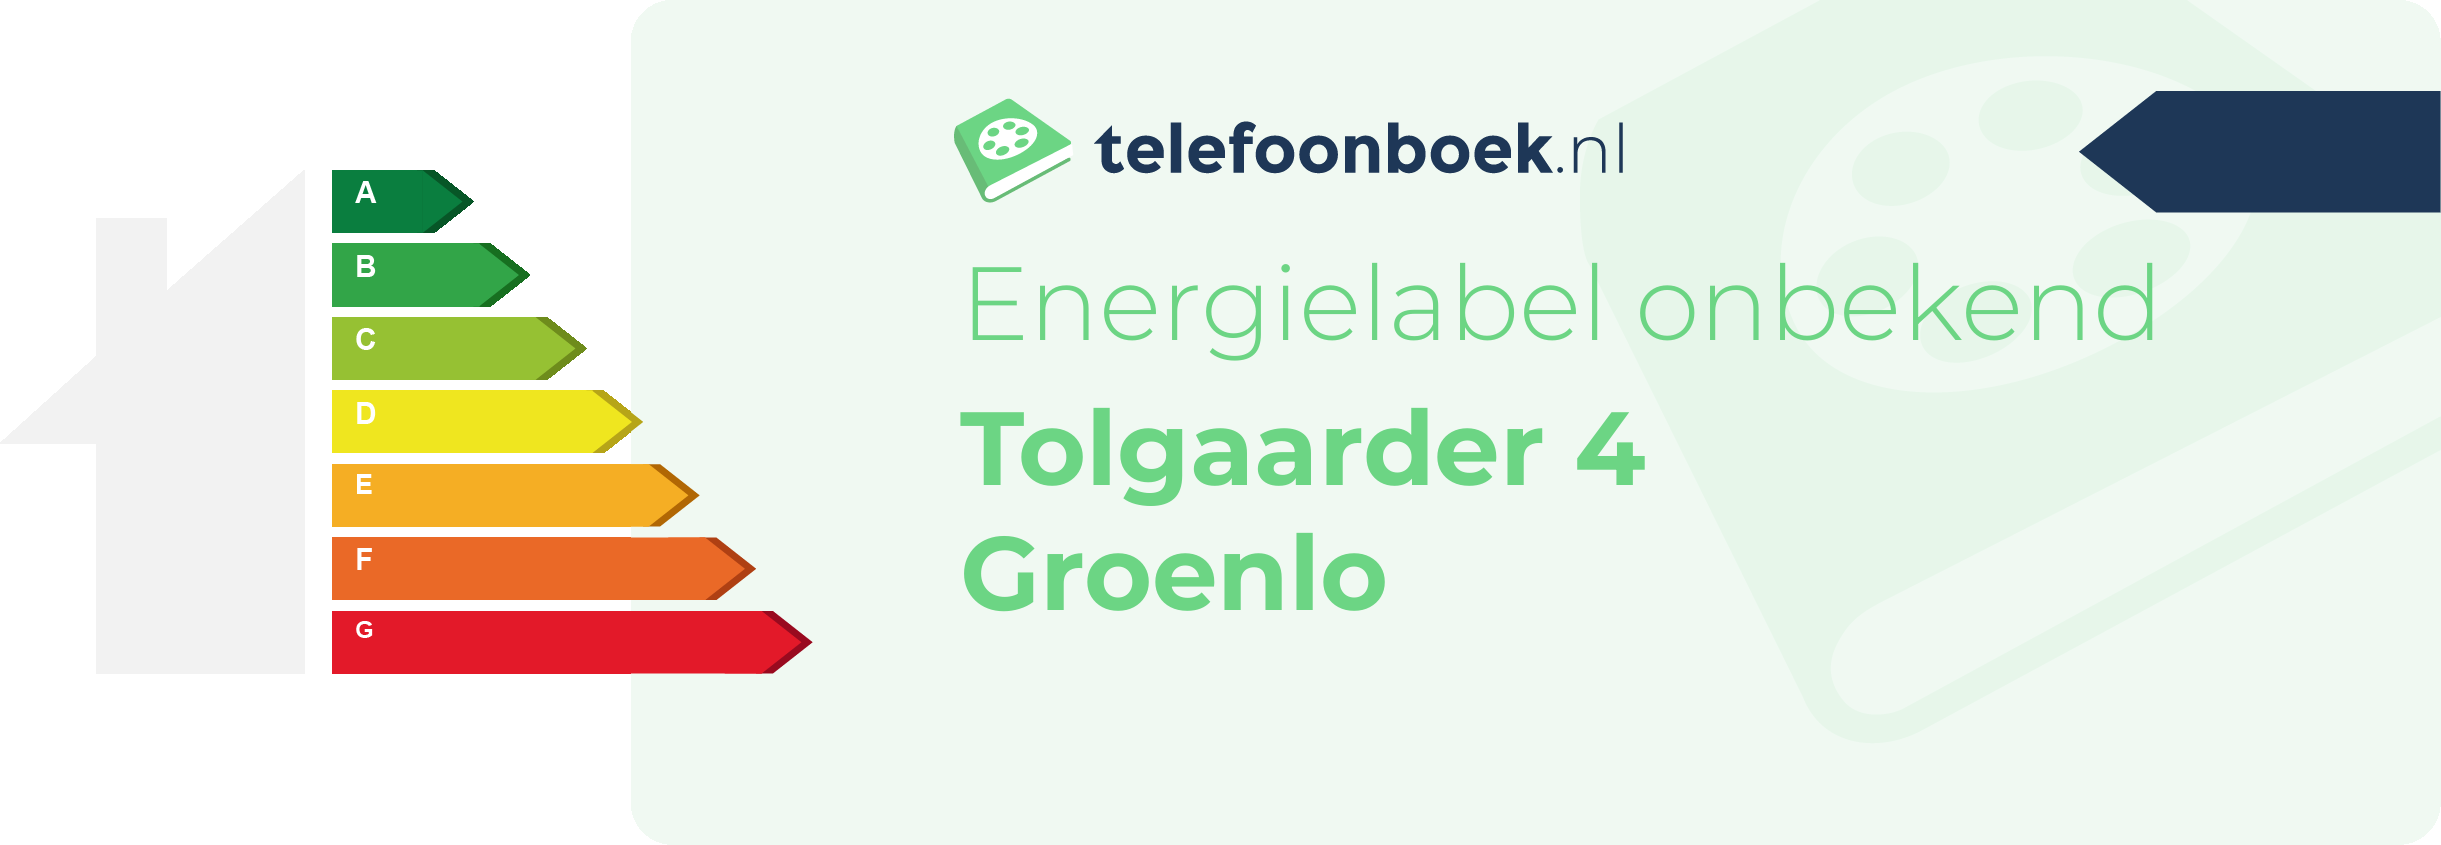 Energielabel Tolgaarder 4 Groenlo